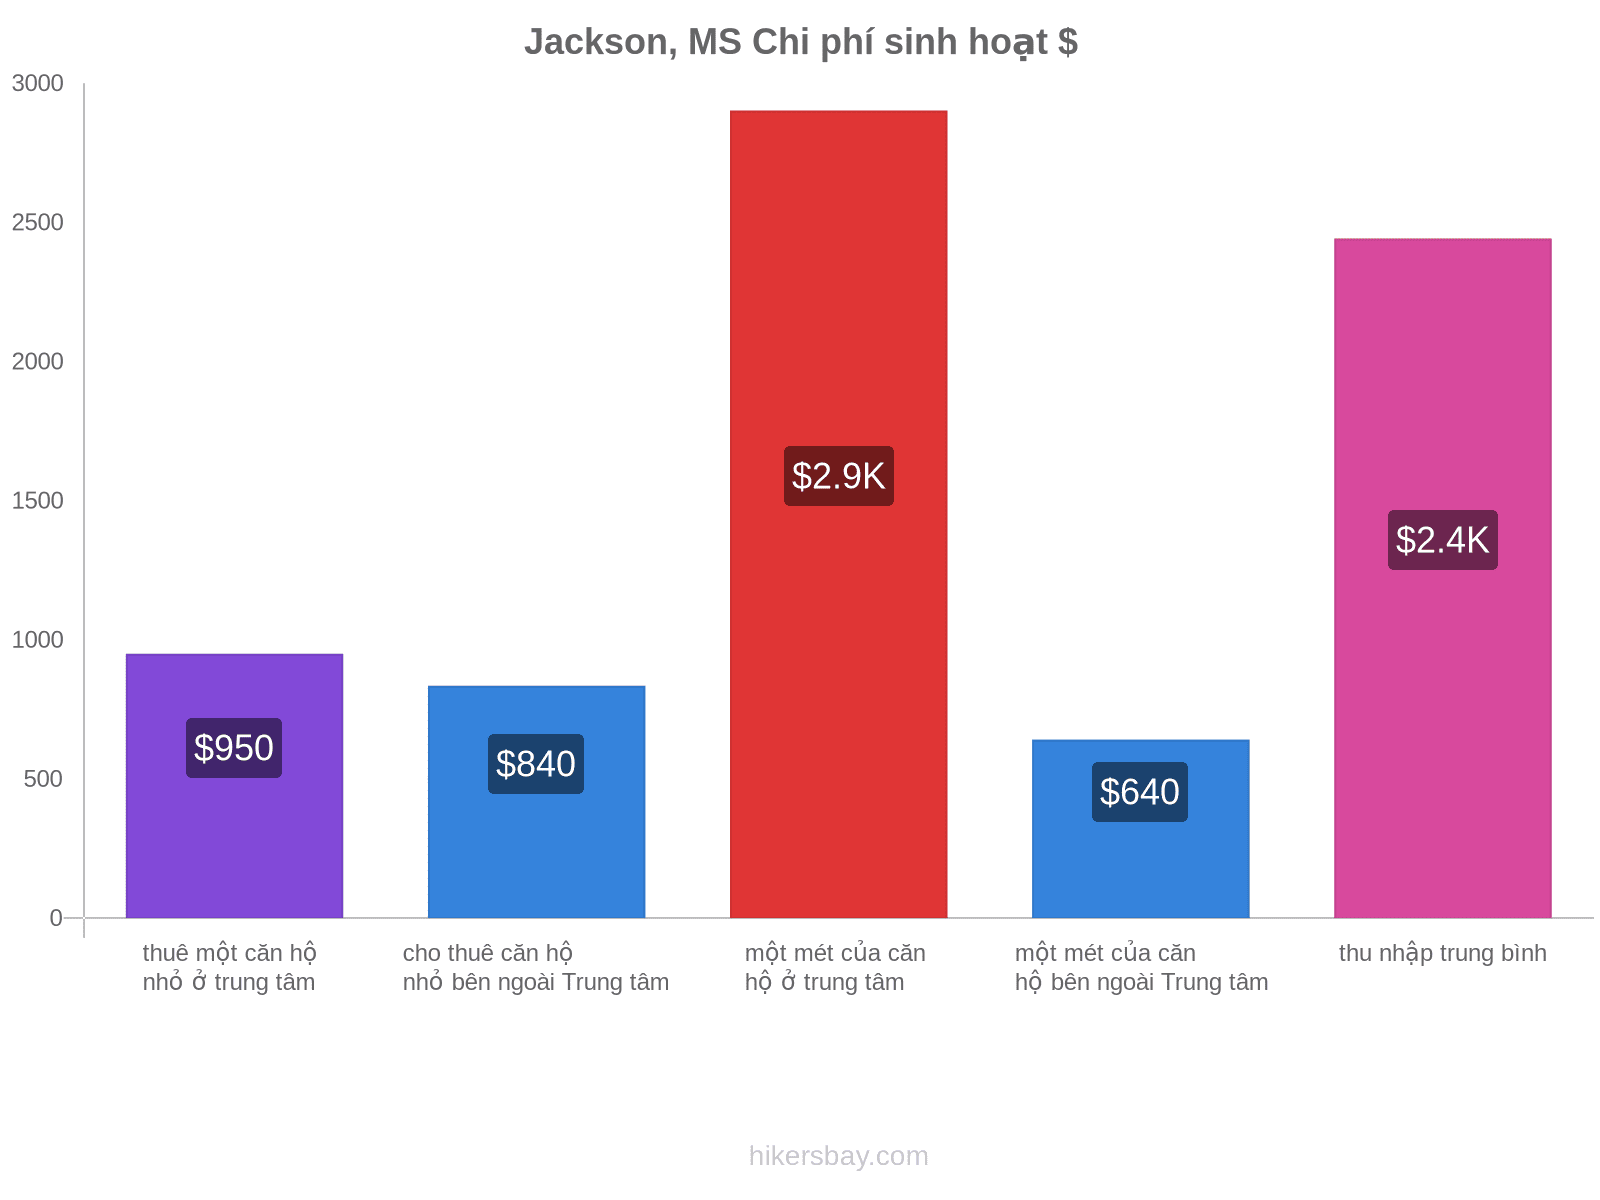 Jackson, MS chi phí sinh hoạt hikersbay.com